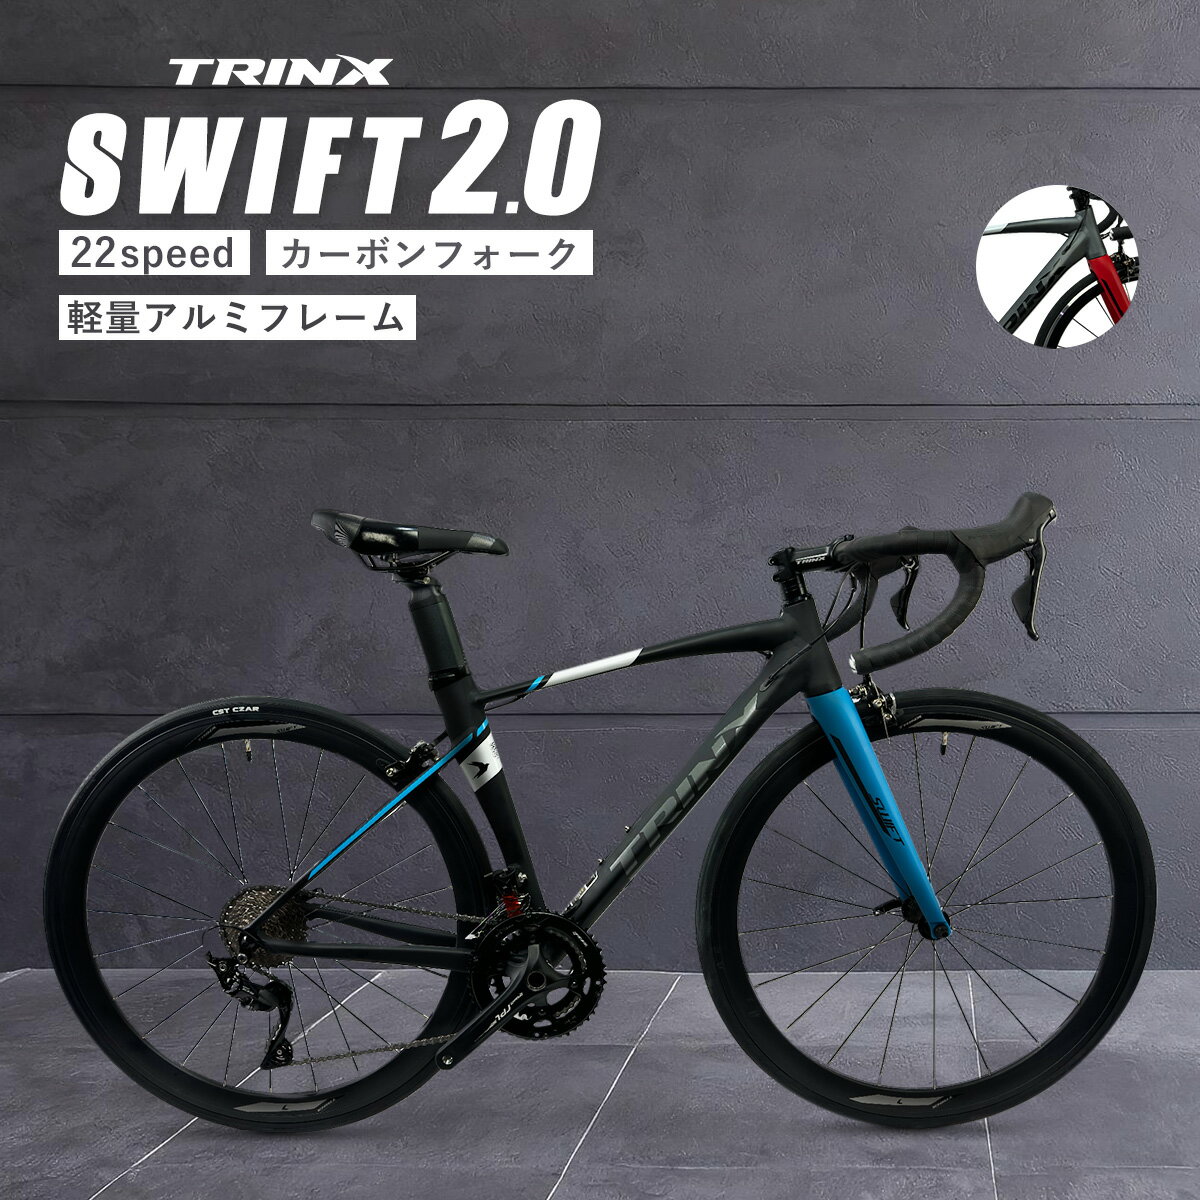 【5月30日限定★ポイント5倍】本格派ロードバイク レース 入門からレース・競技用として TRINX SWIFT 自転車 カーボン シマノ 22段変速 700c サイクリング